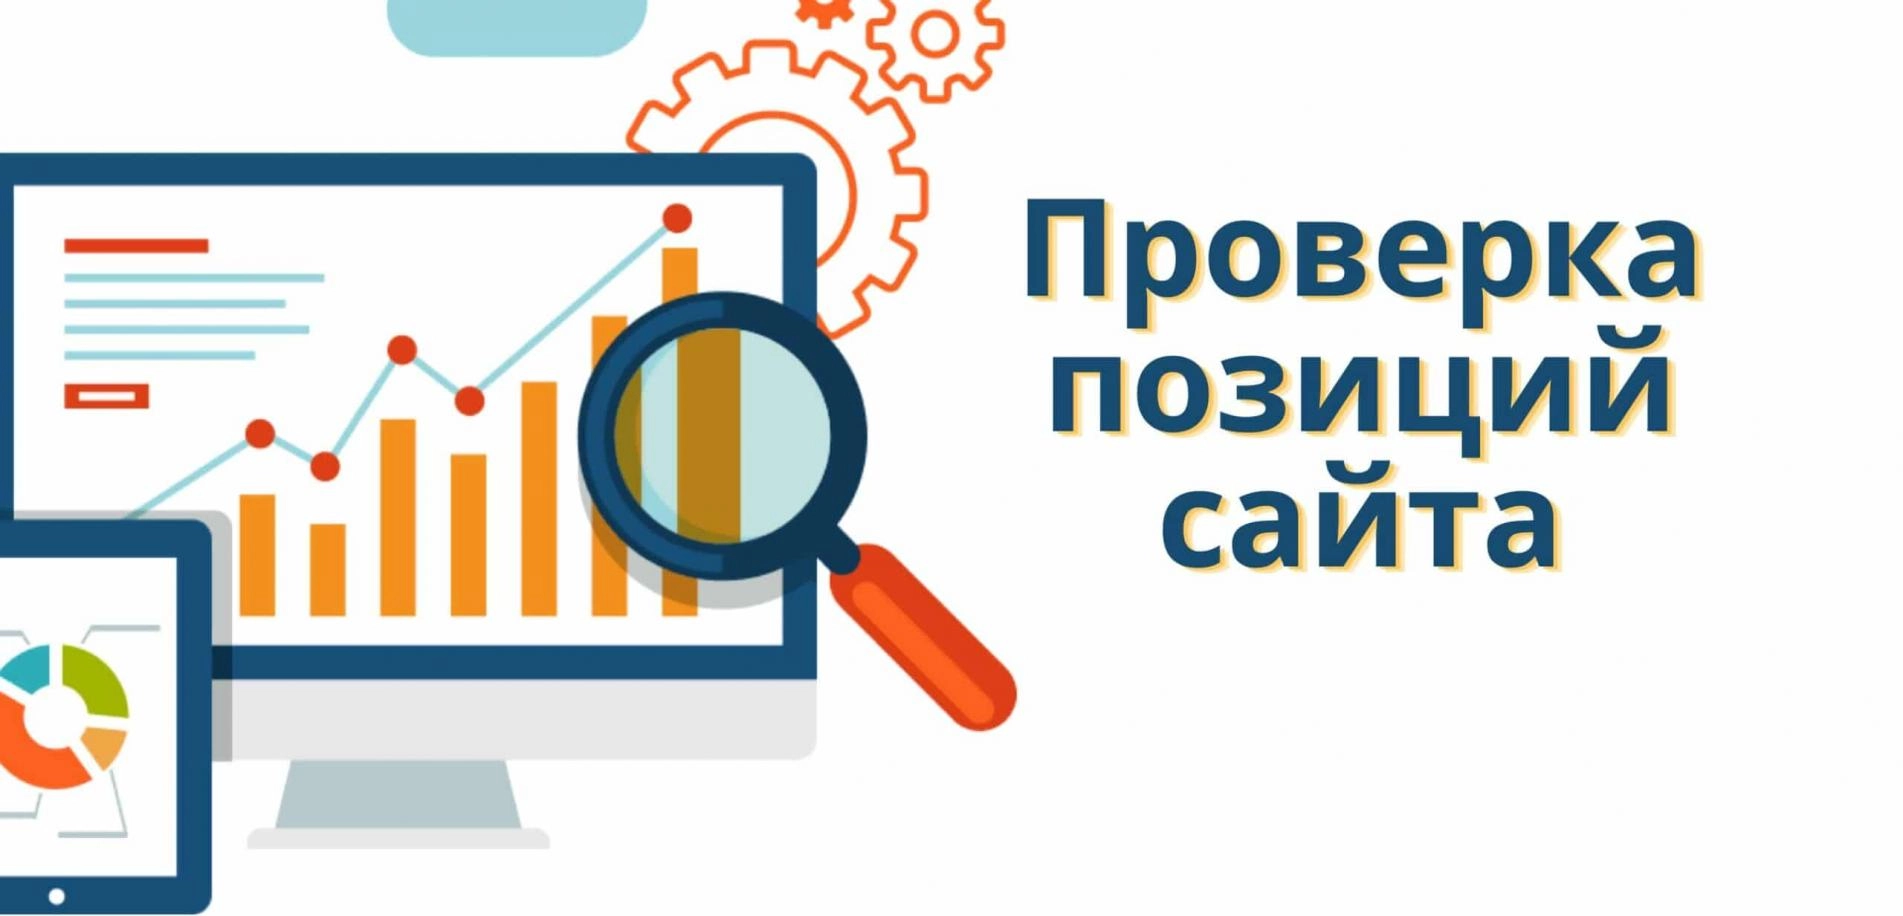 Позиция в Яндексе по поисковым фразам онлайн